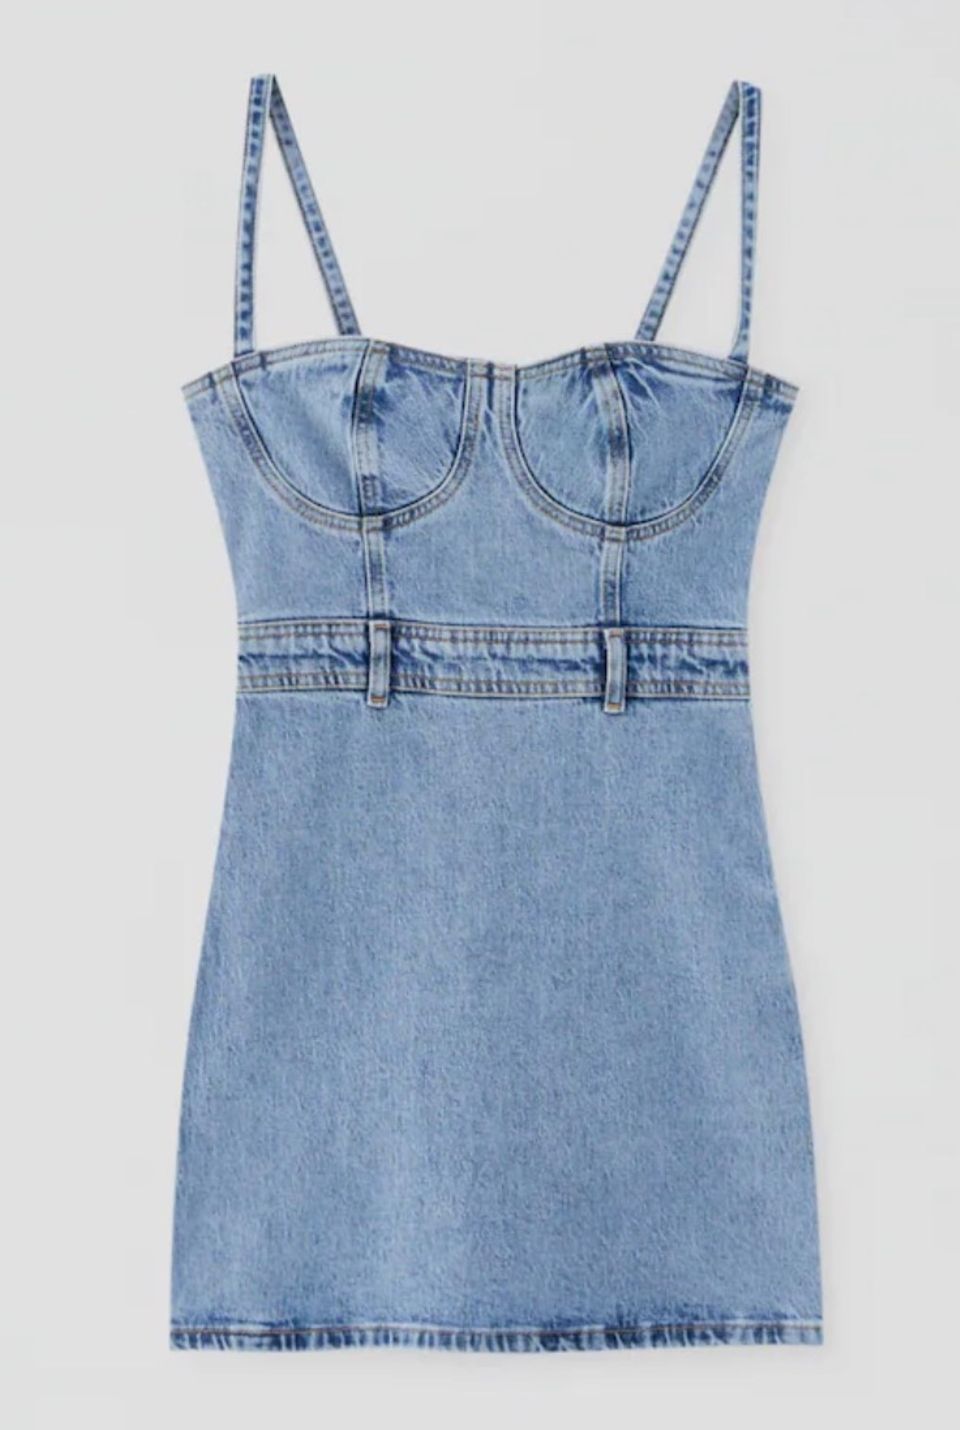 Jeans-Liebhaber aufgepasst: Auch als Kleid ist dieser Stoff super für den Sommer geeignet (vor allem wenn er aus Biobaumwolle besteht). Von Pull&Bear, kostet ca. 35 Euro.